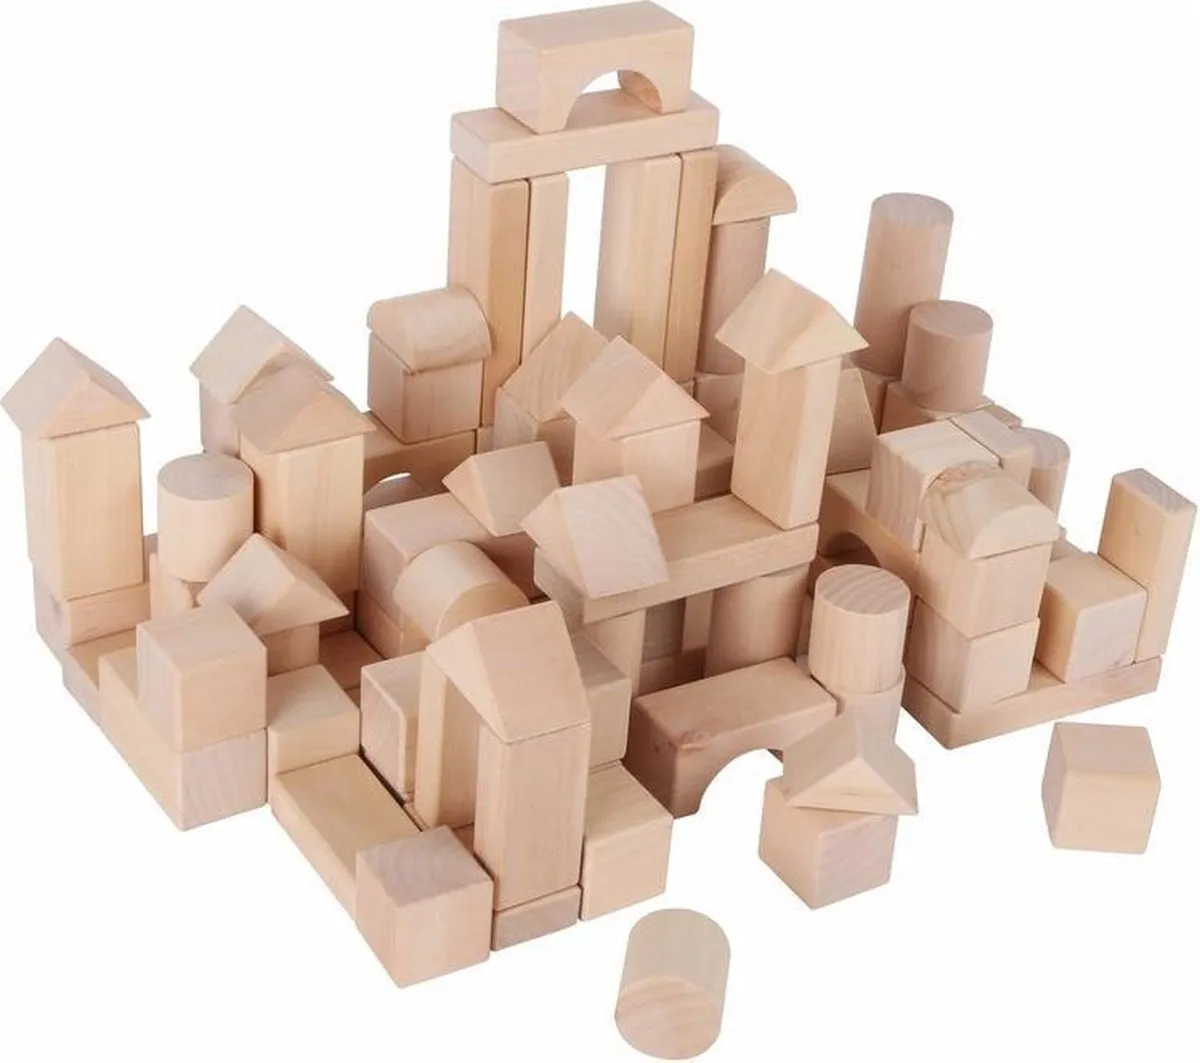 Zak met 100x stuks houten blokken - bouwen constructie speelgoed jongens en meisjes speelgoed